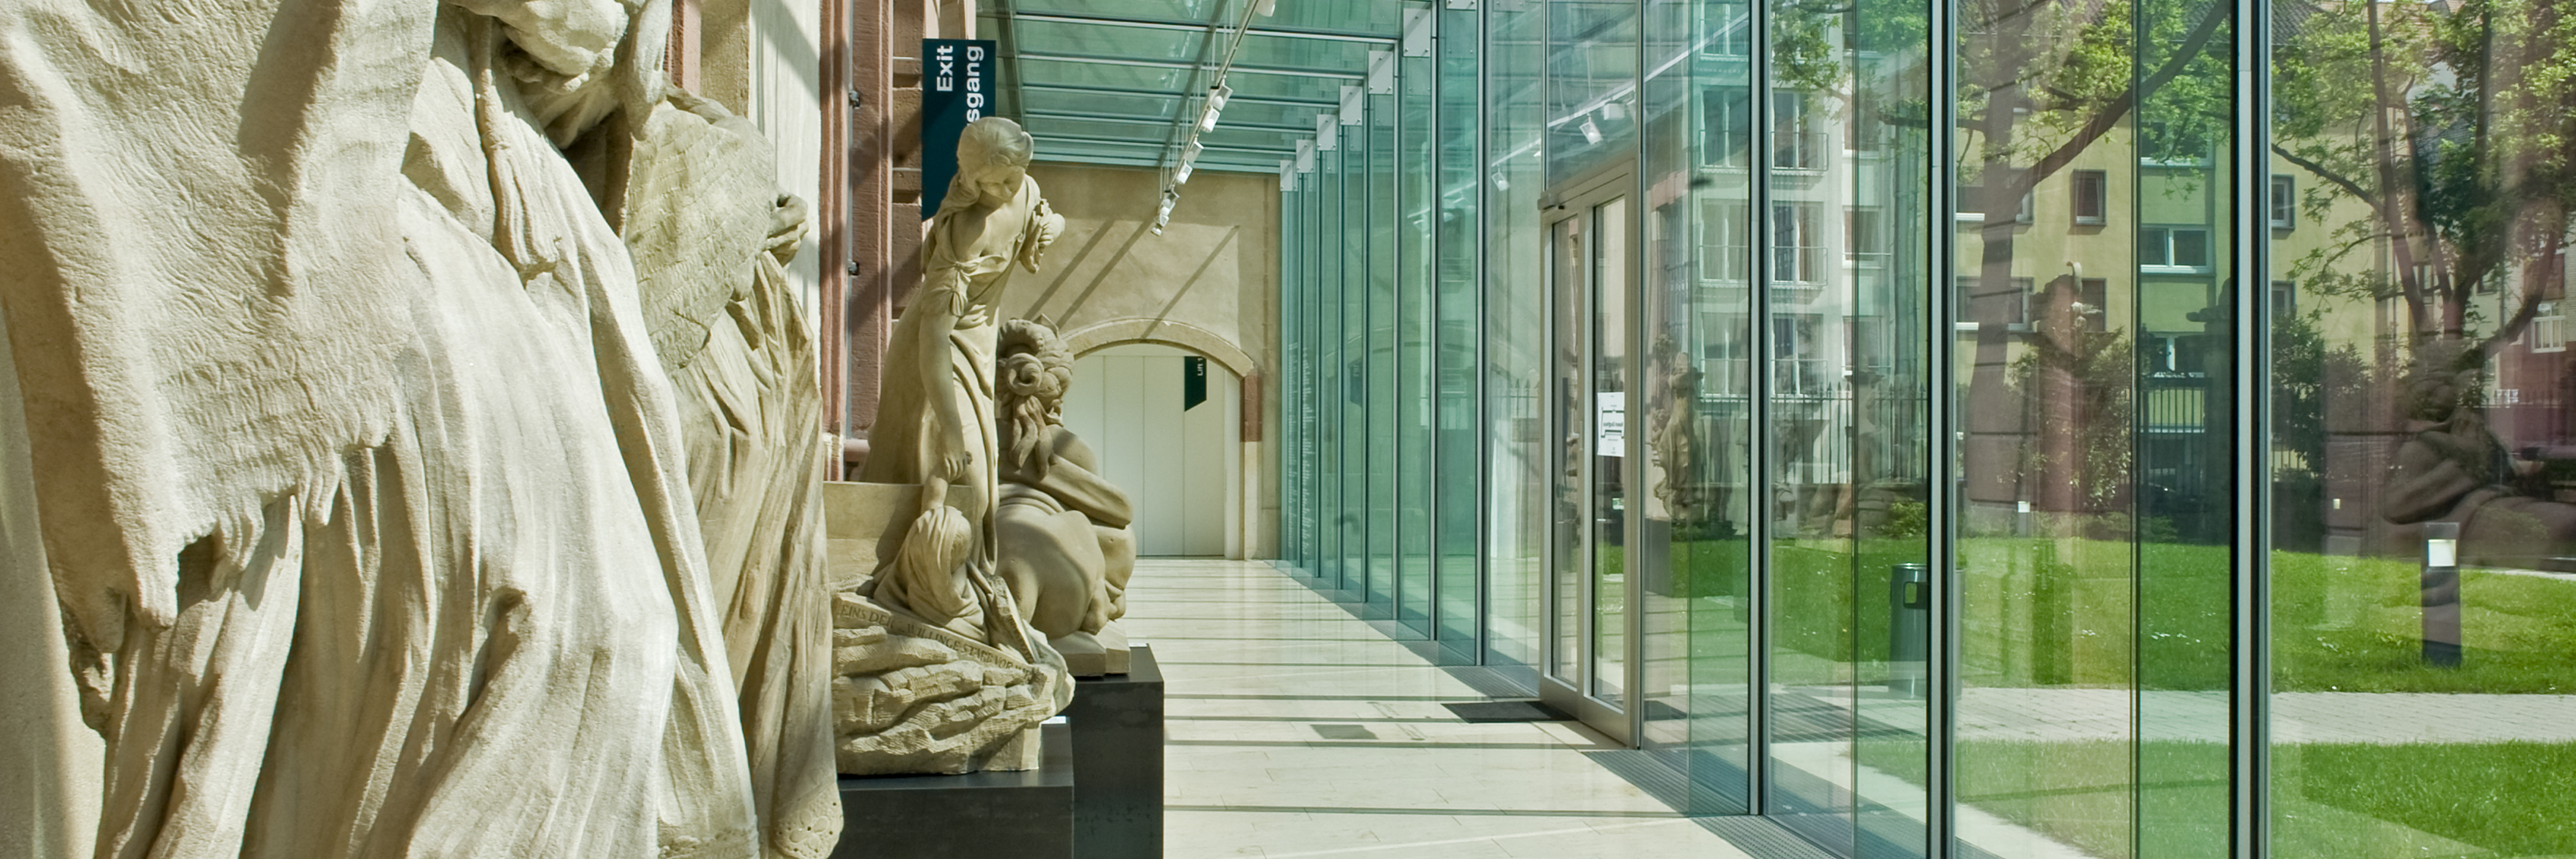 Glasfoyer mit Statuen auf der linken Seite